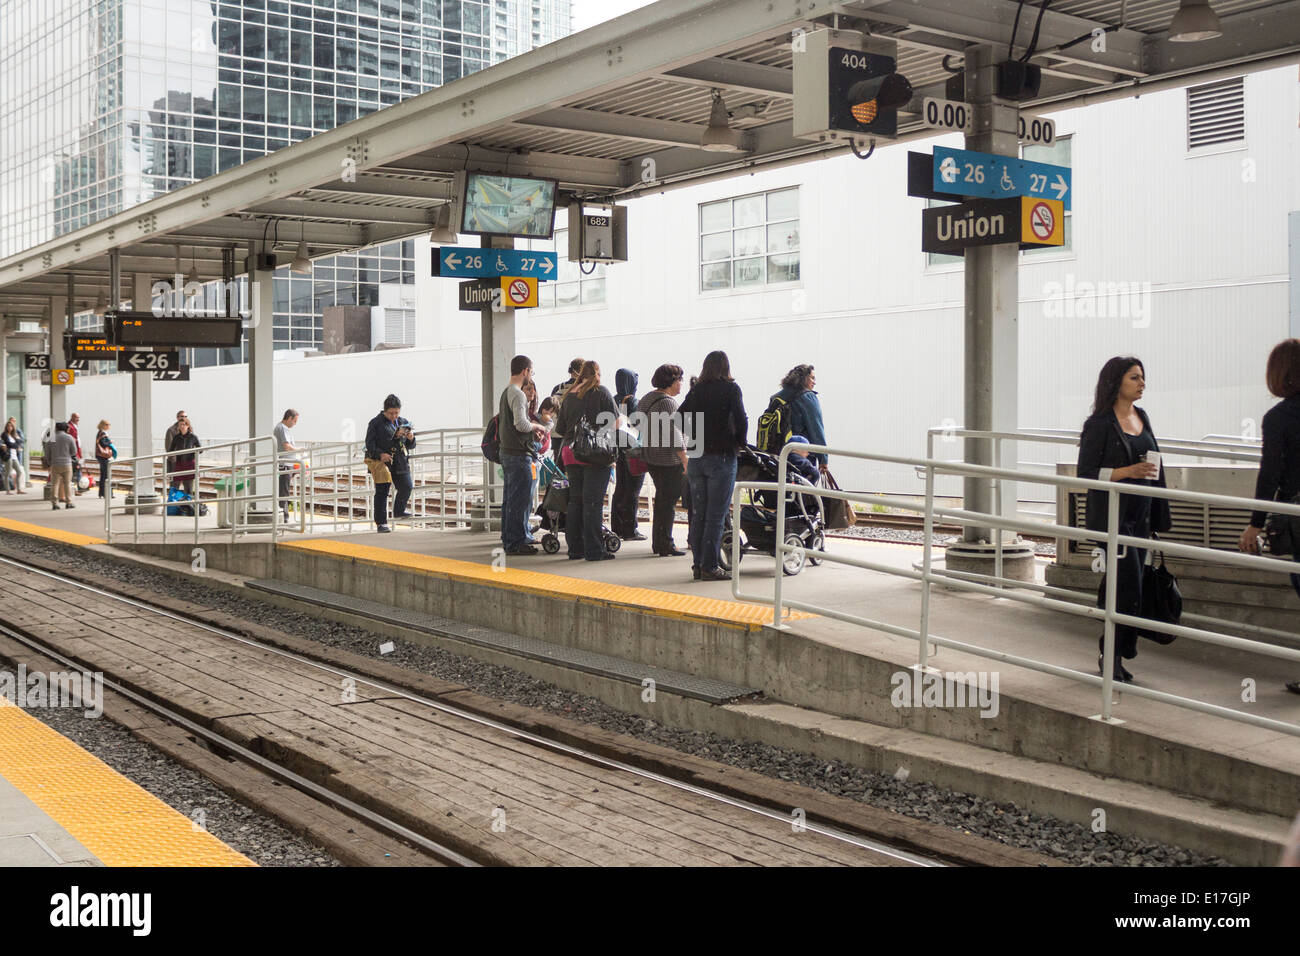 Les gens attendent patiemment sur les plates-formes à la gare Union de Toronto pour les trains de banlieue Banque D'Images